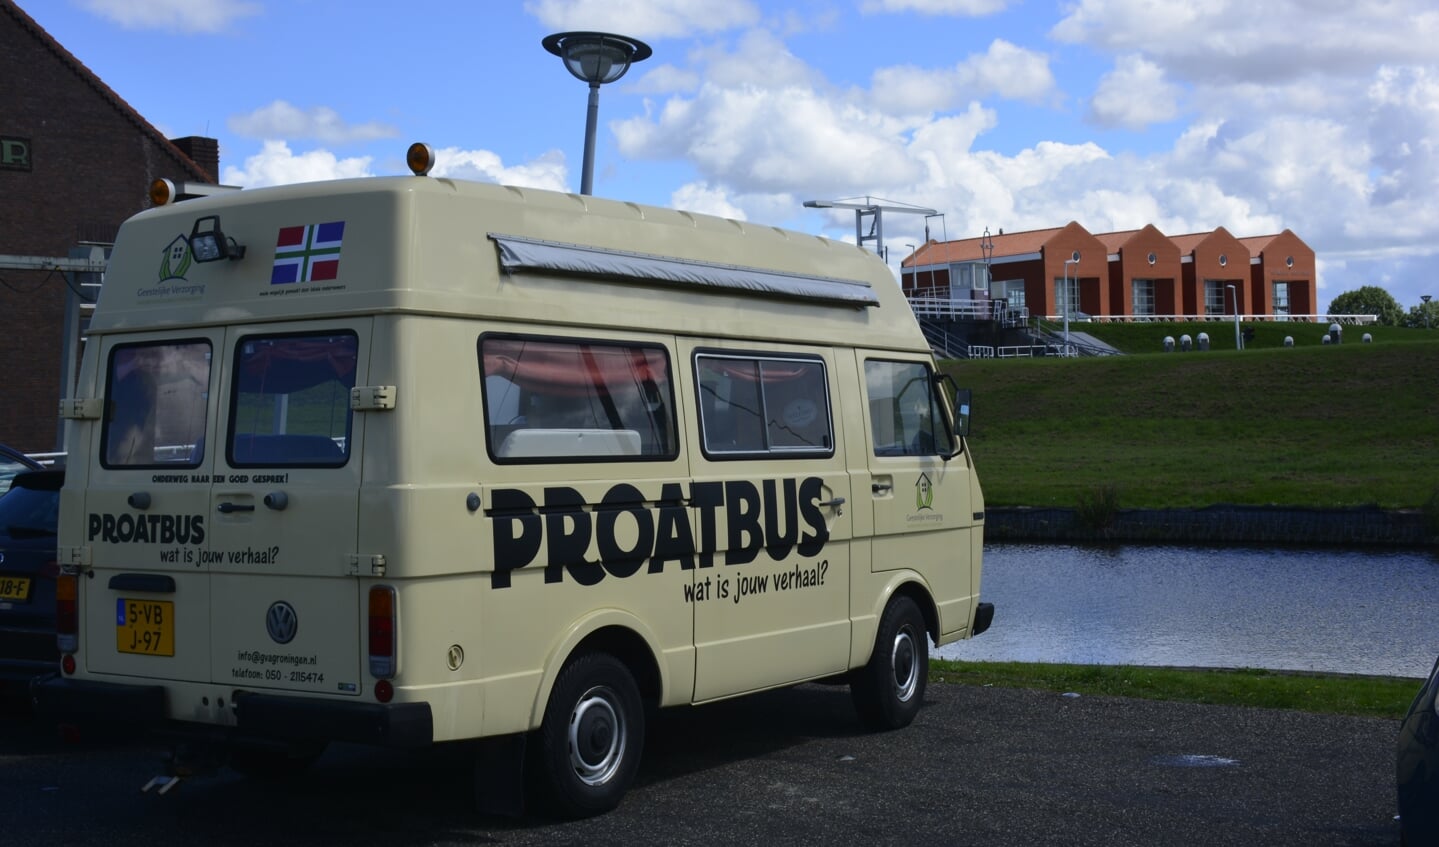 De 'Proatbus' van de geestelijk verzorgers.